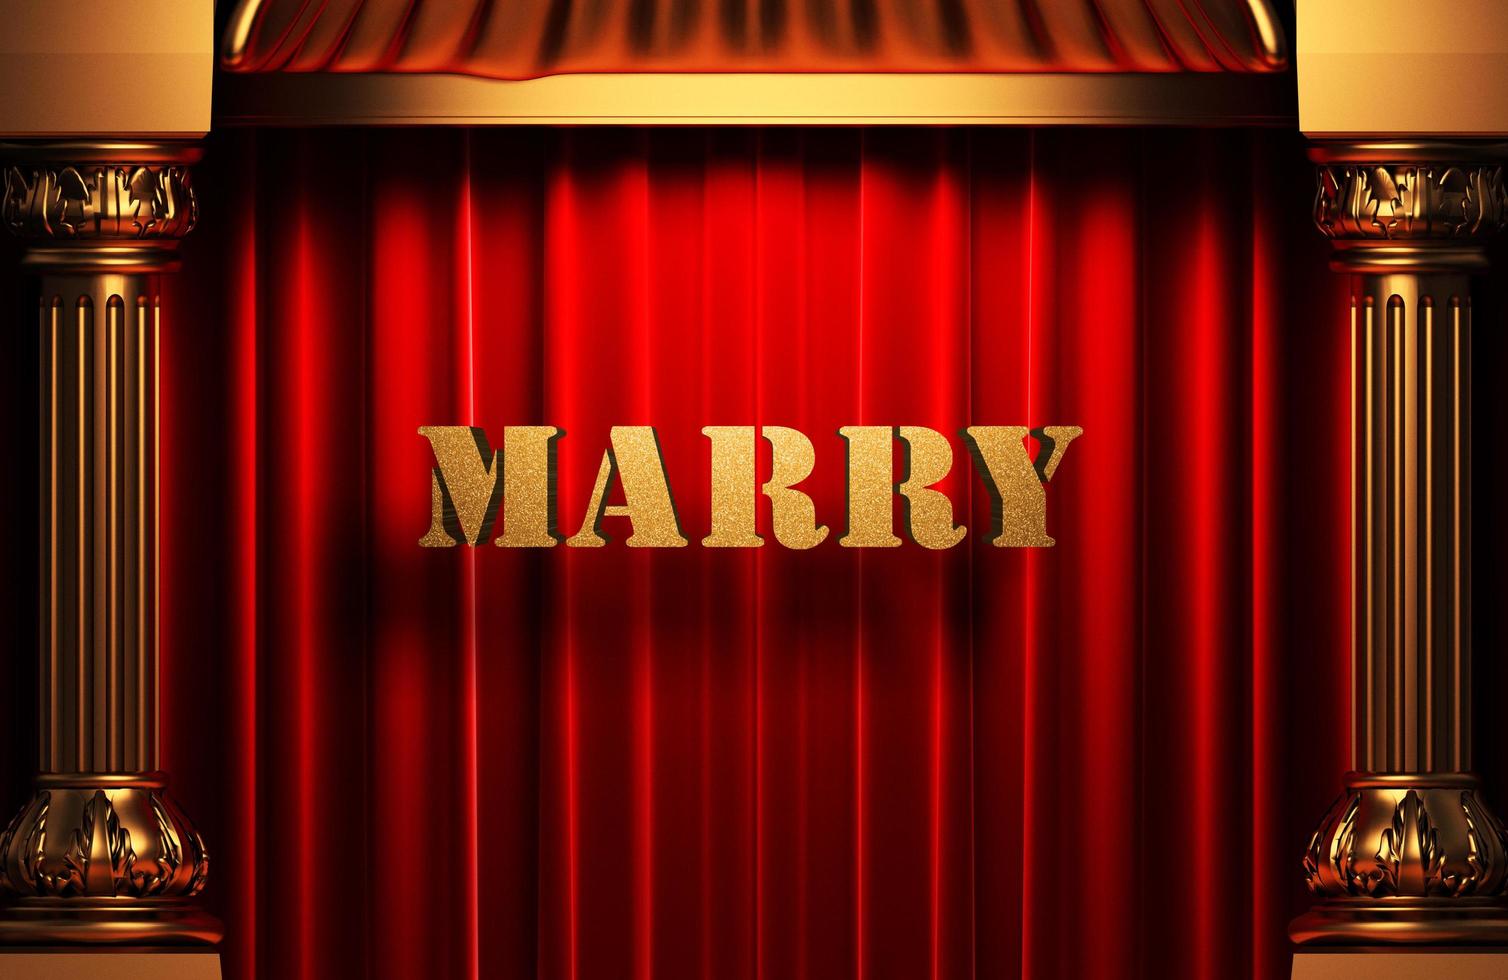 trouwen met gouden woord op rood gordijn foto